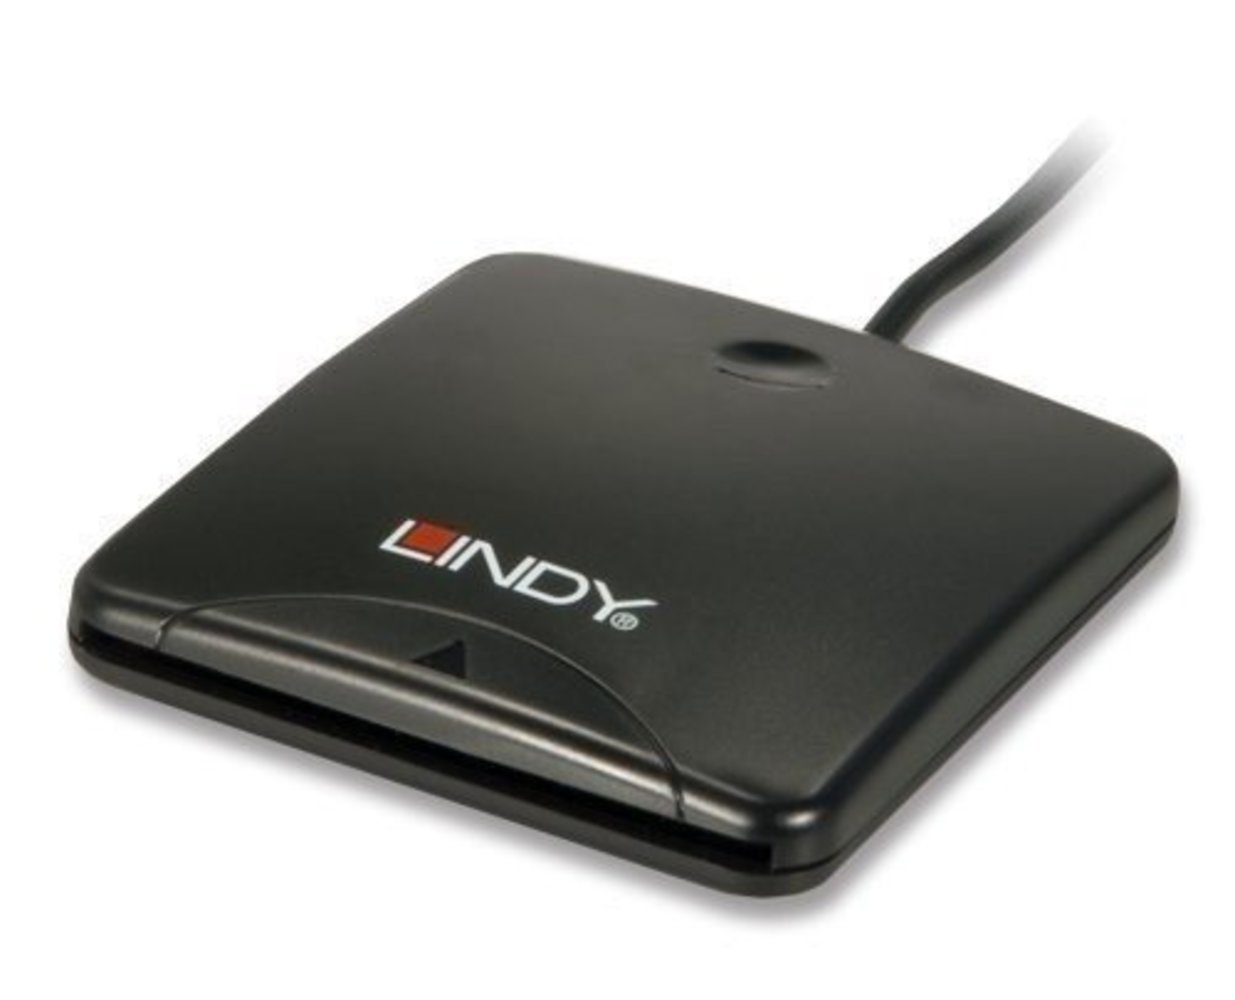 Lindy Chipkartenleser USB 3.0 – Hochwertiger Chipkartenscanner für schnelle Datenübertragung